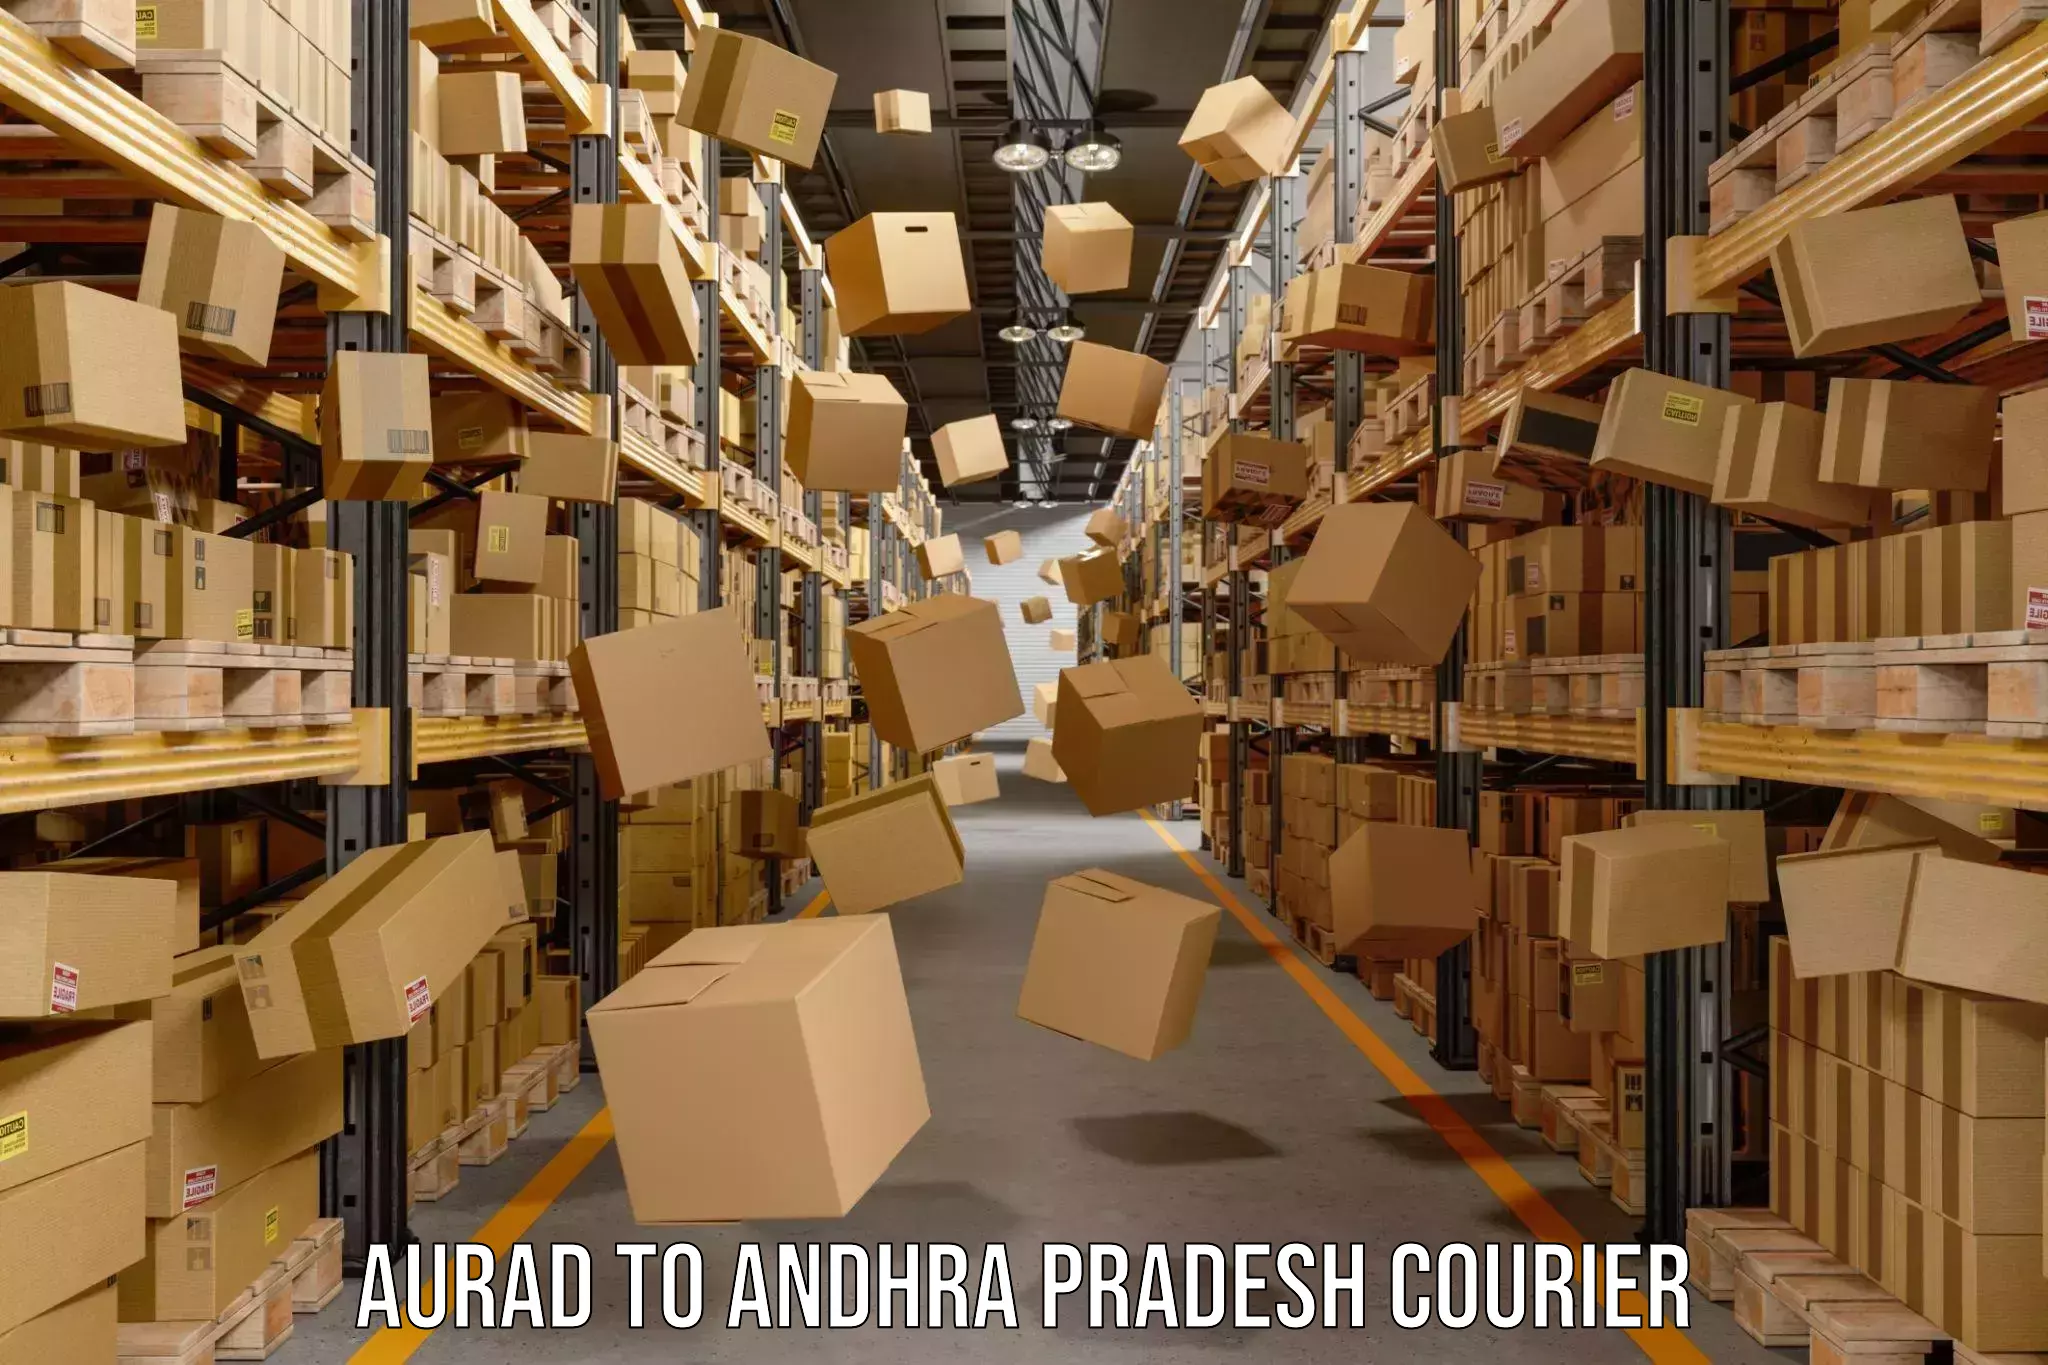 Weekend courier service Aurad to Proddatur